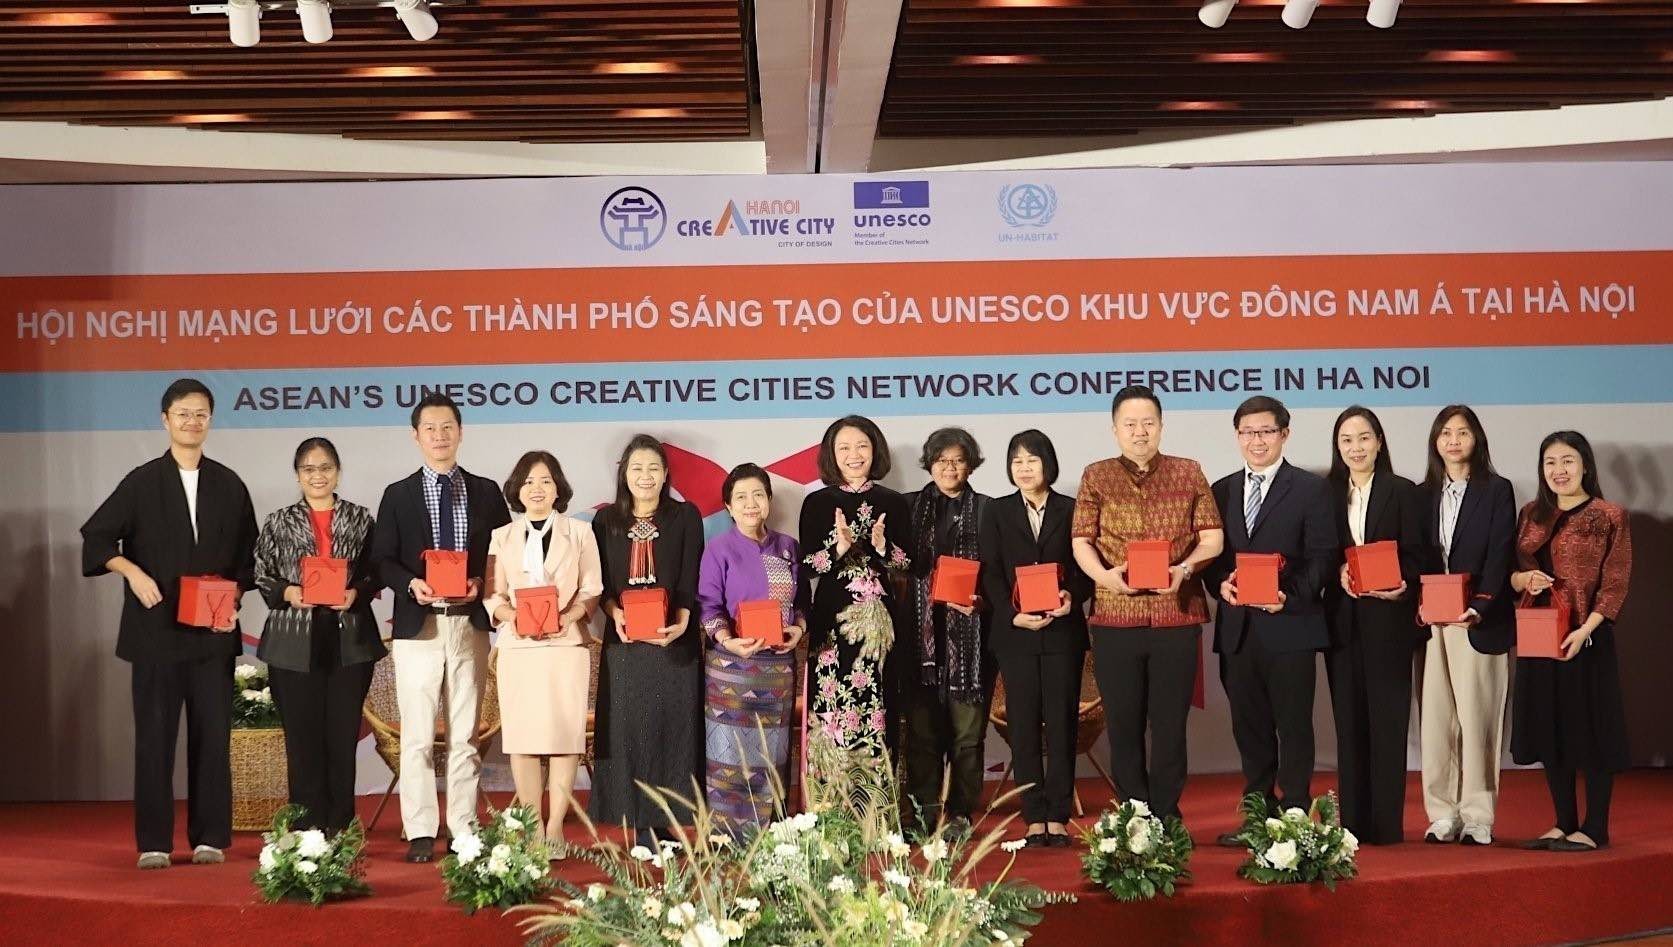 Phó Chủ tịch UBND thành phố Hà Nội Vũ Thu Hà tặng quà lưu niệm cho đại diện các thành phố Sáng tạo tham gia diễn đàn. Ảnh: TTXVN phát